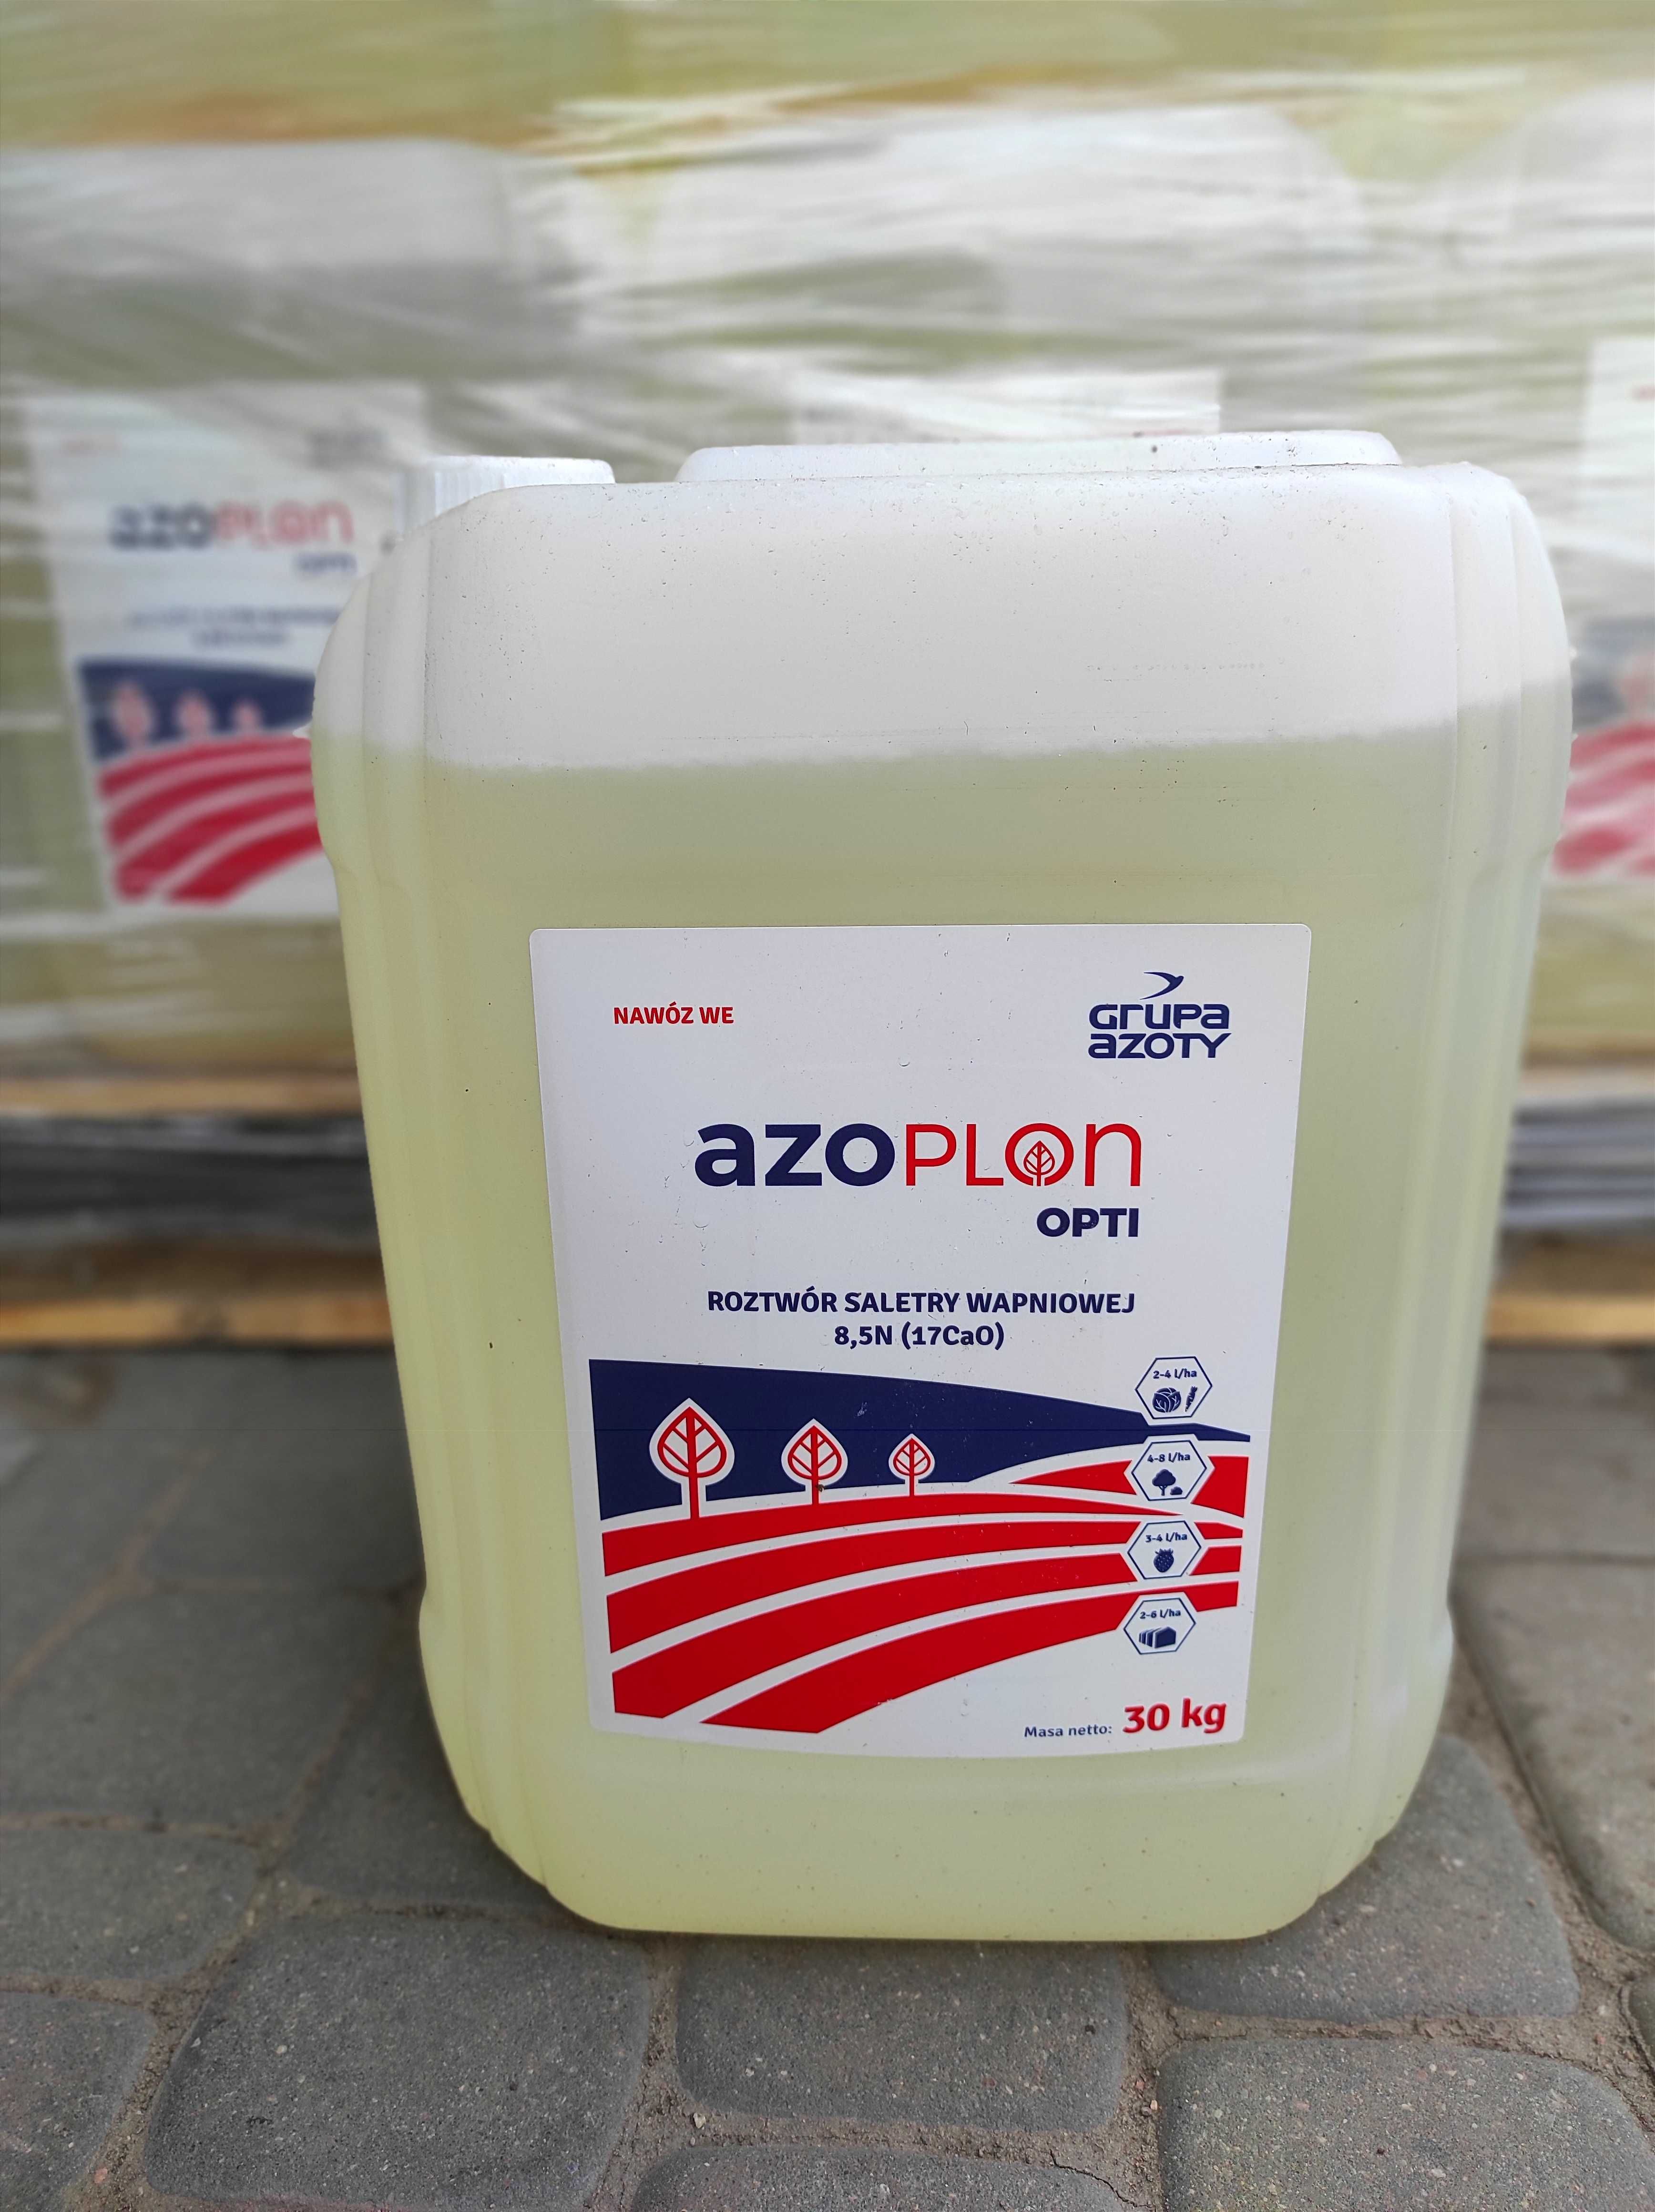 Odżywka, roztwór Saletry wapniowej Azoplon,  pojemnik 20l, 5l  wysyłka